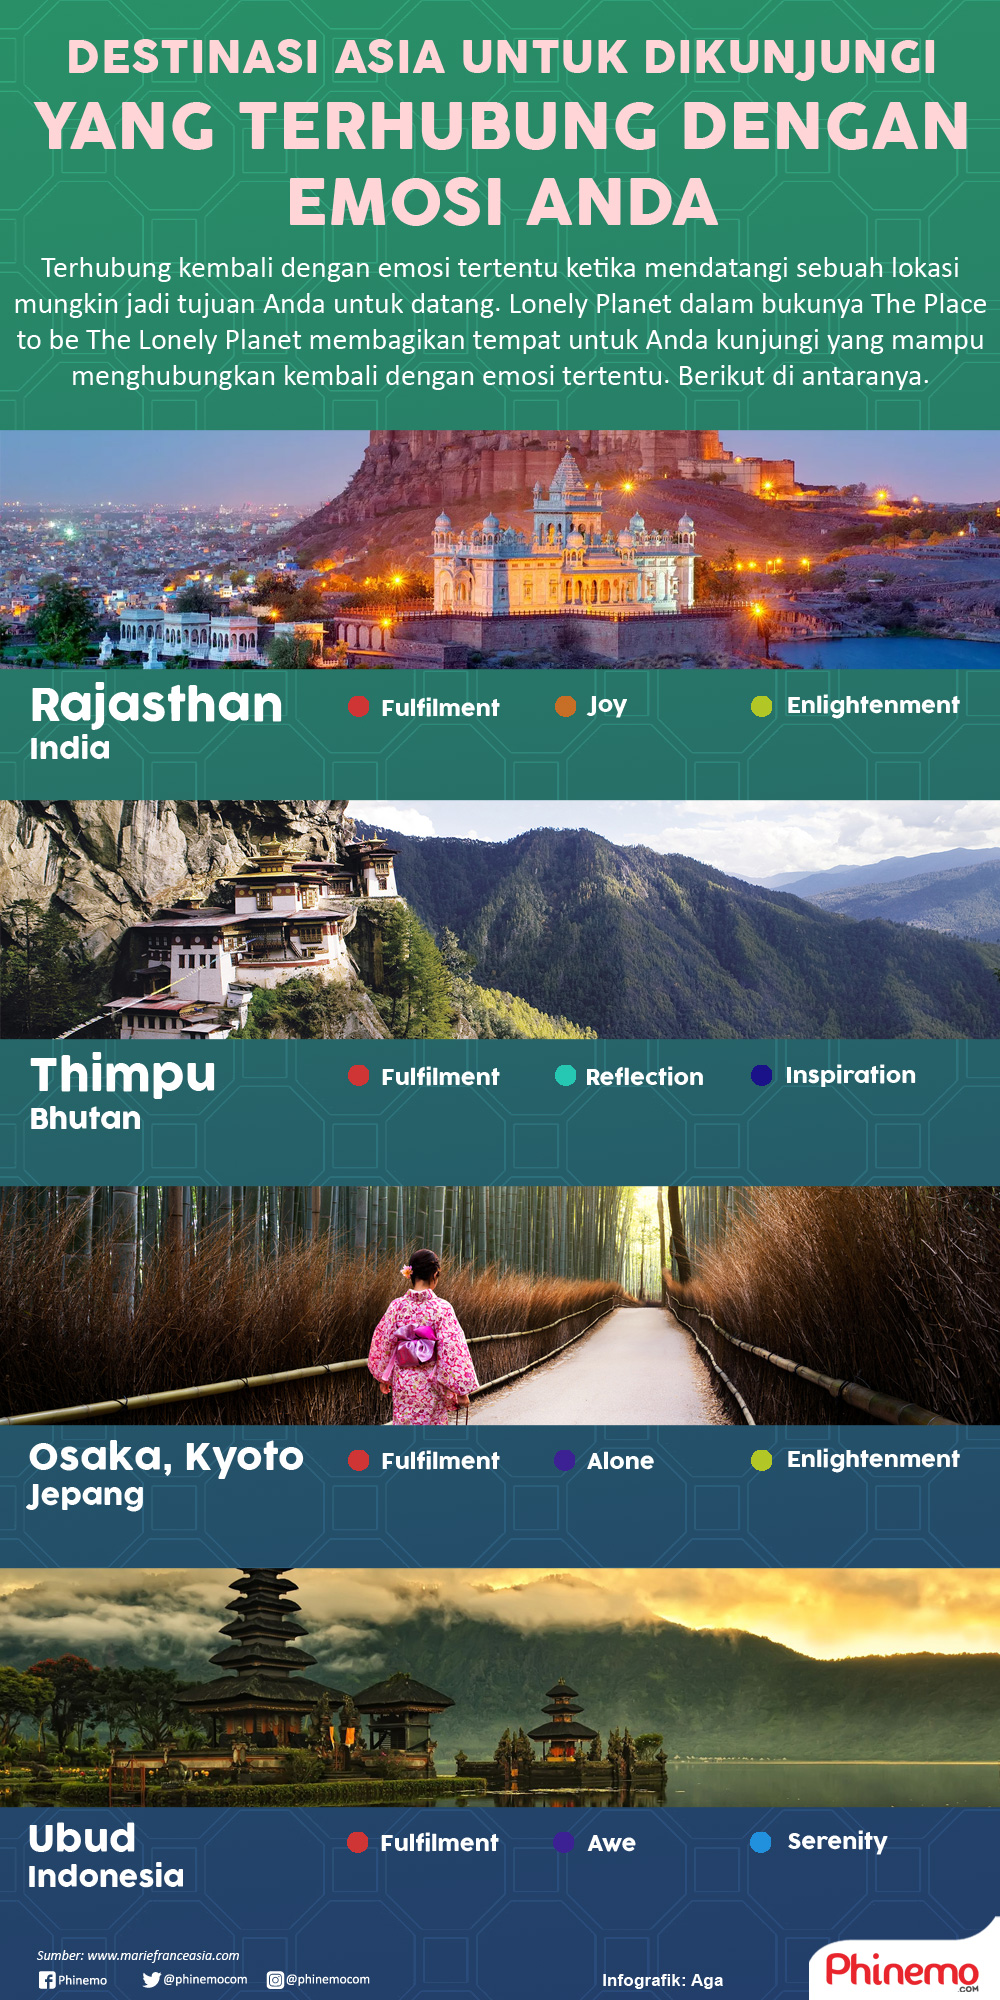 Infografik Destinasi yang Terhubung dengan Emosi Anda untuk Dikunjungi di Asia